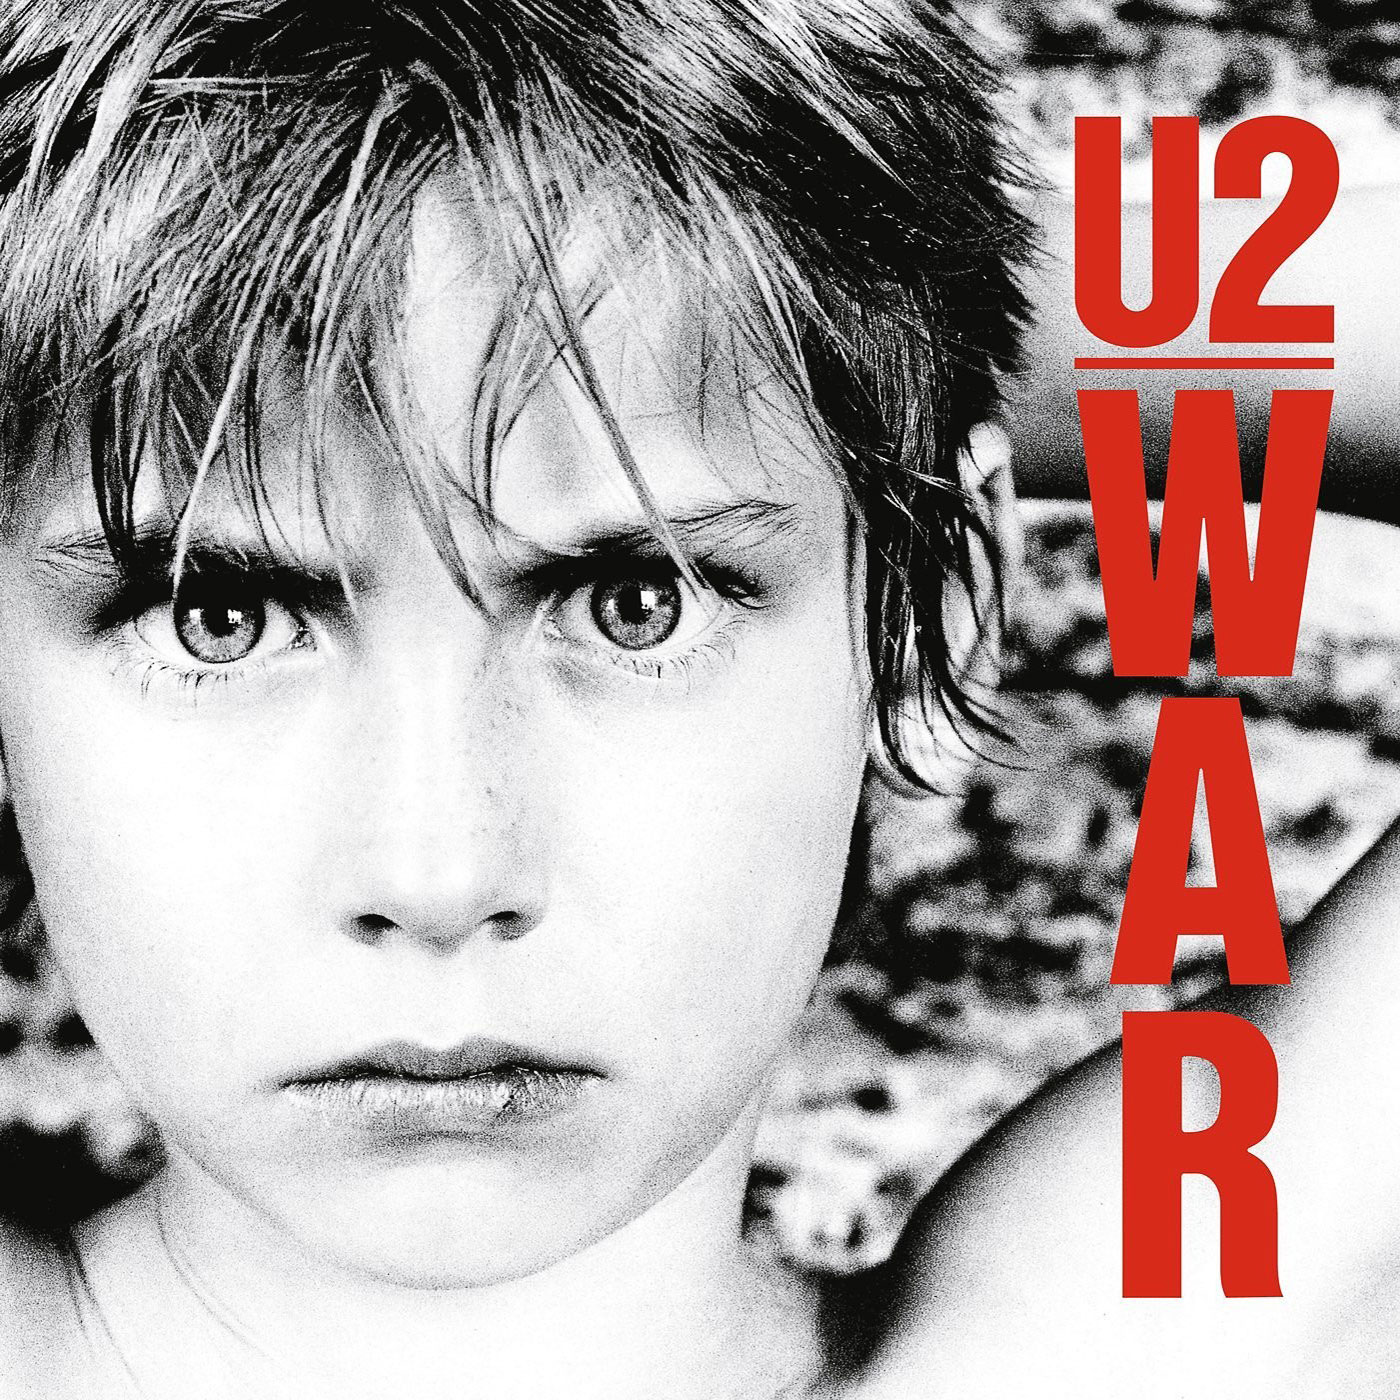 528 U2 – War